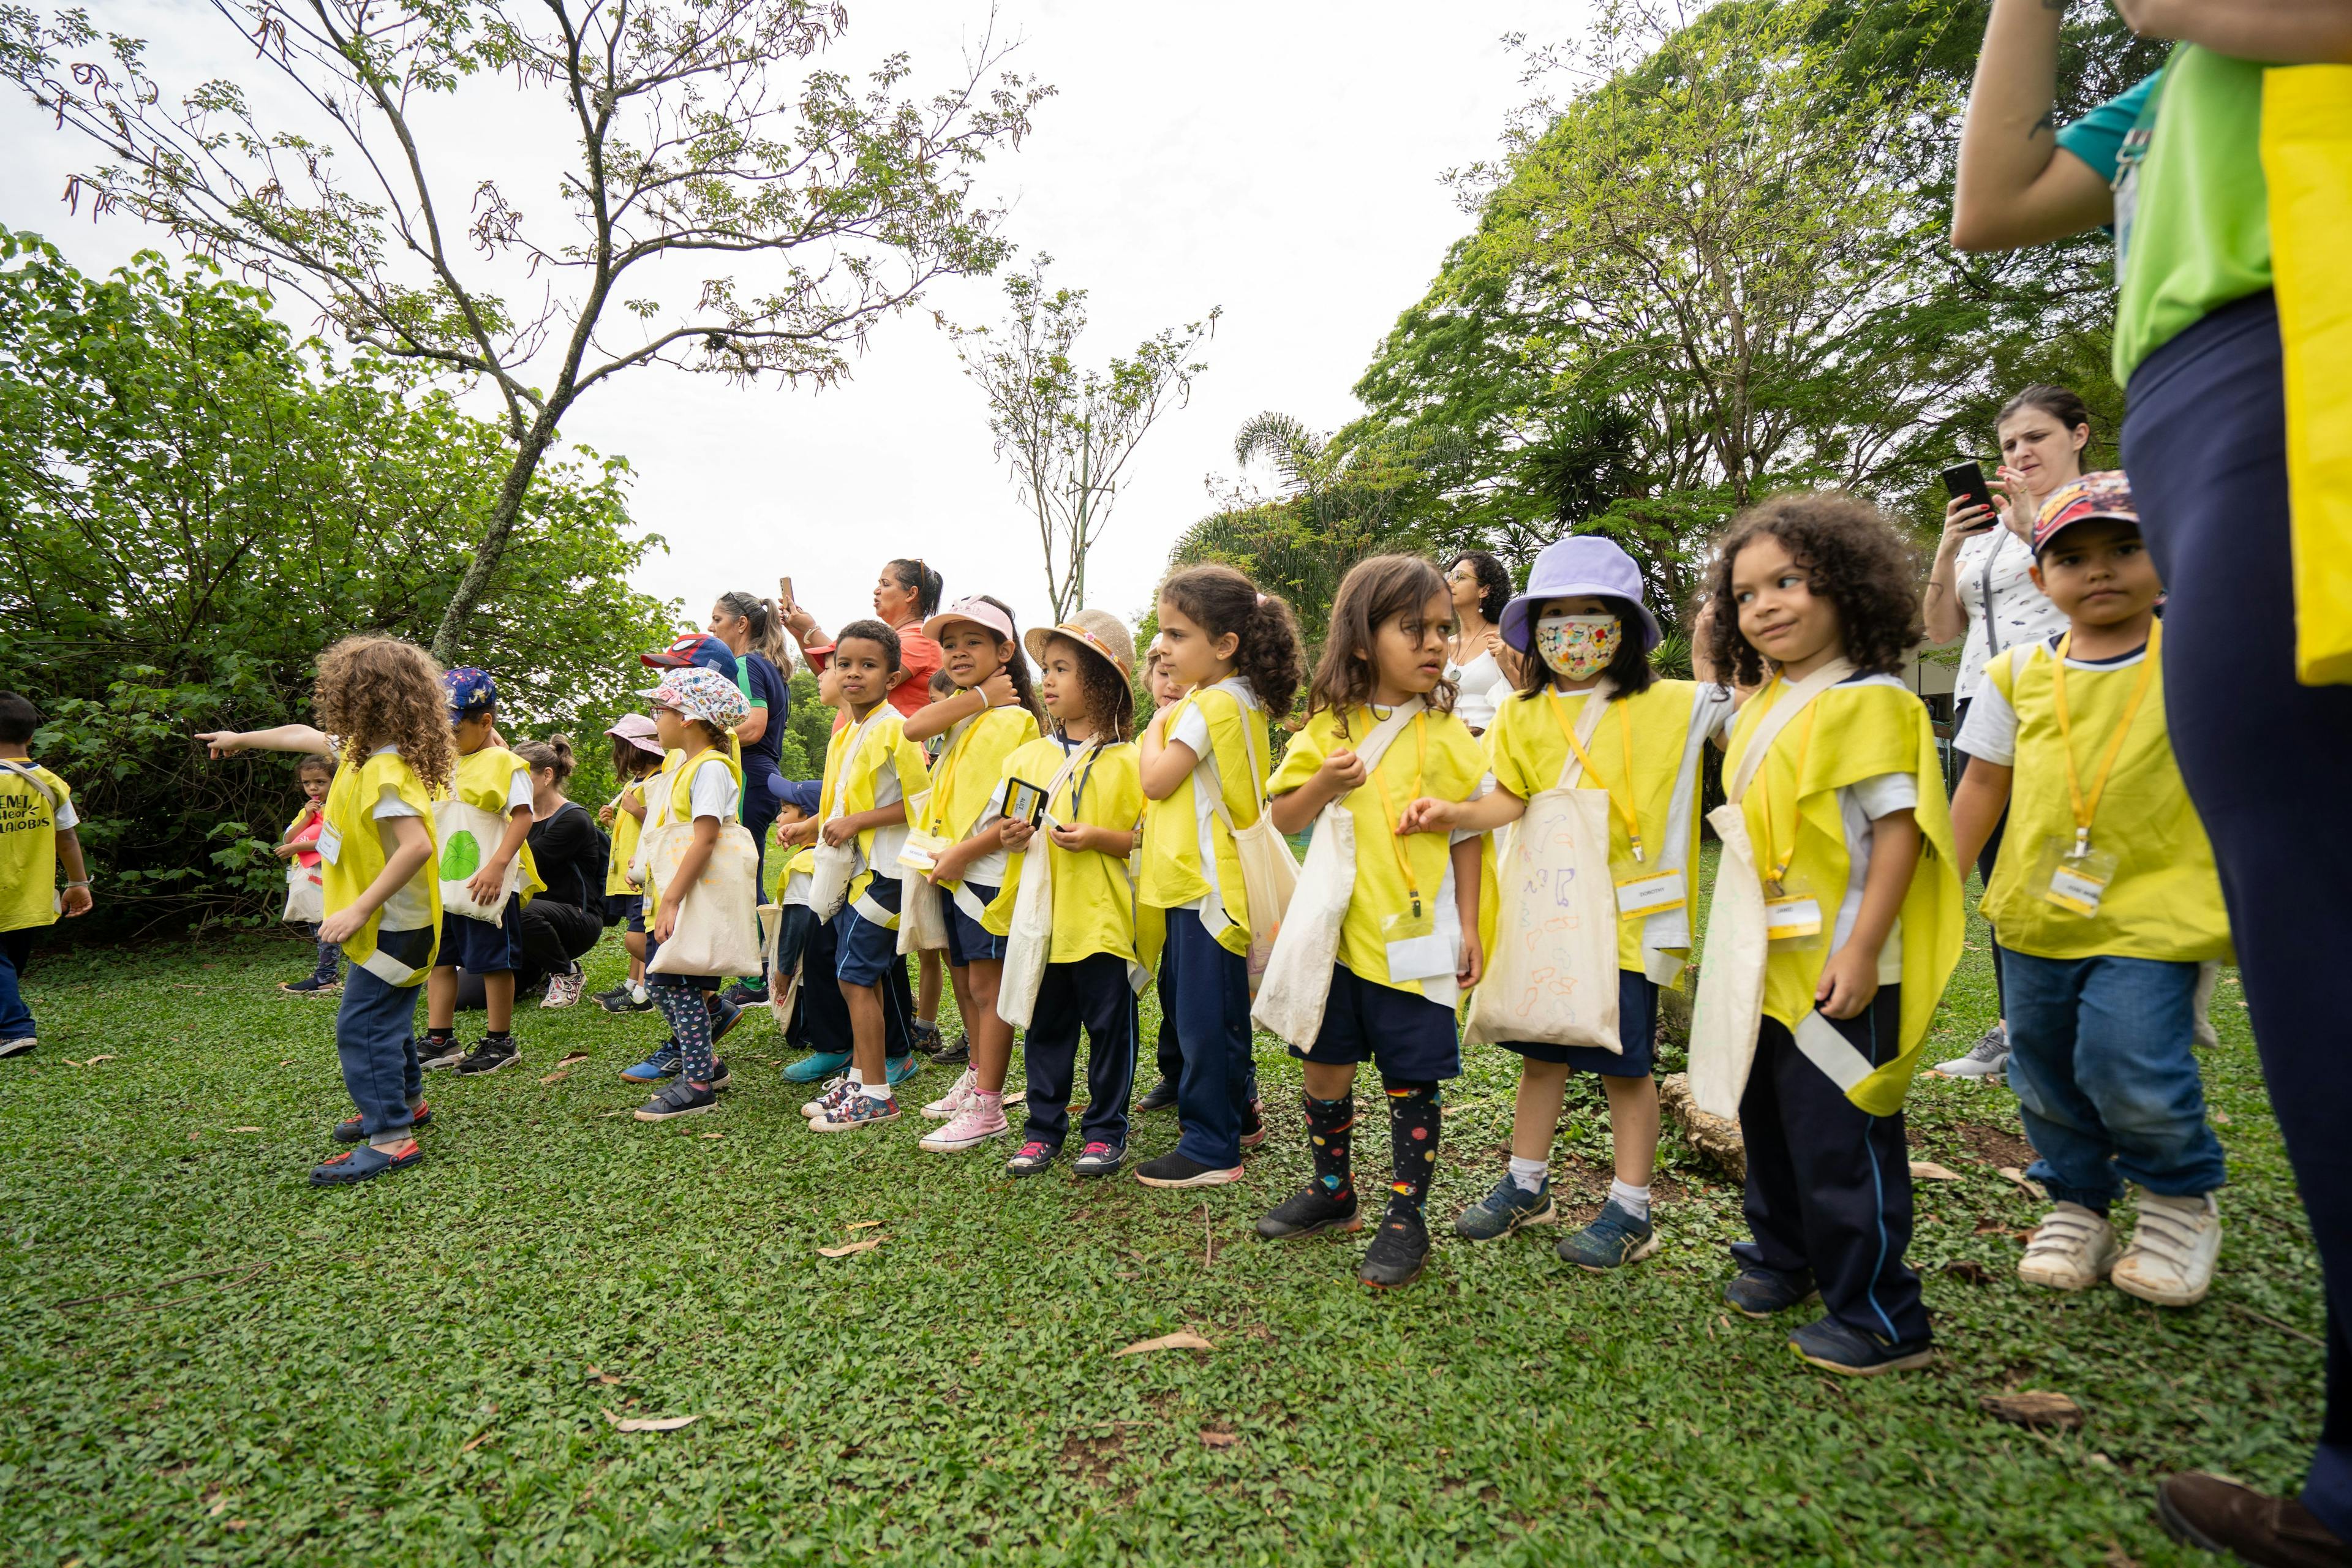 Programa Escola no Parque proporciona conexão com a natureza e educação sustentável em São Paulo